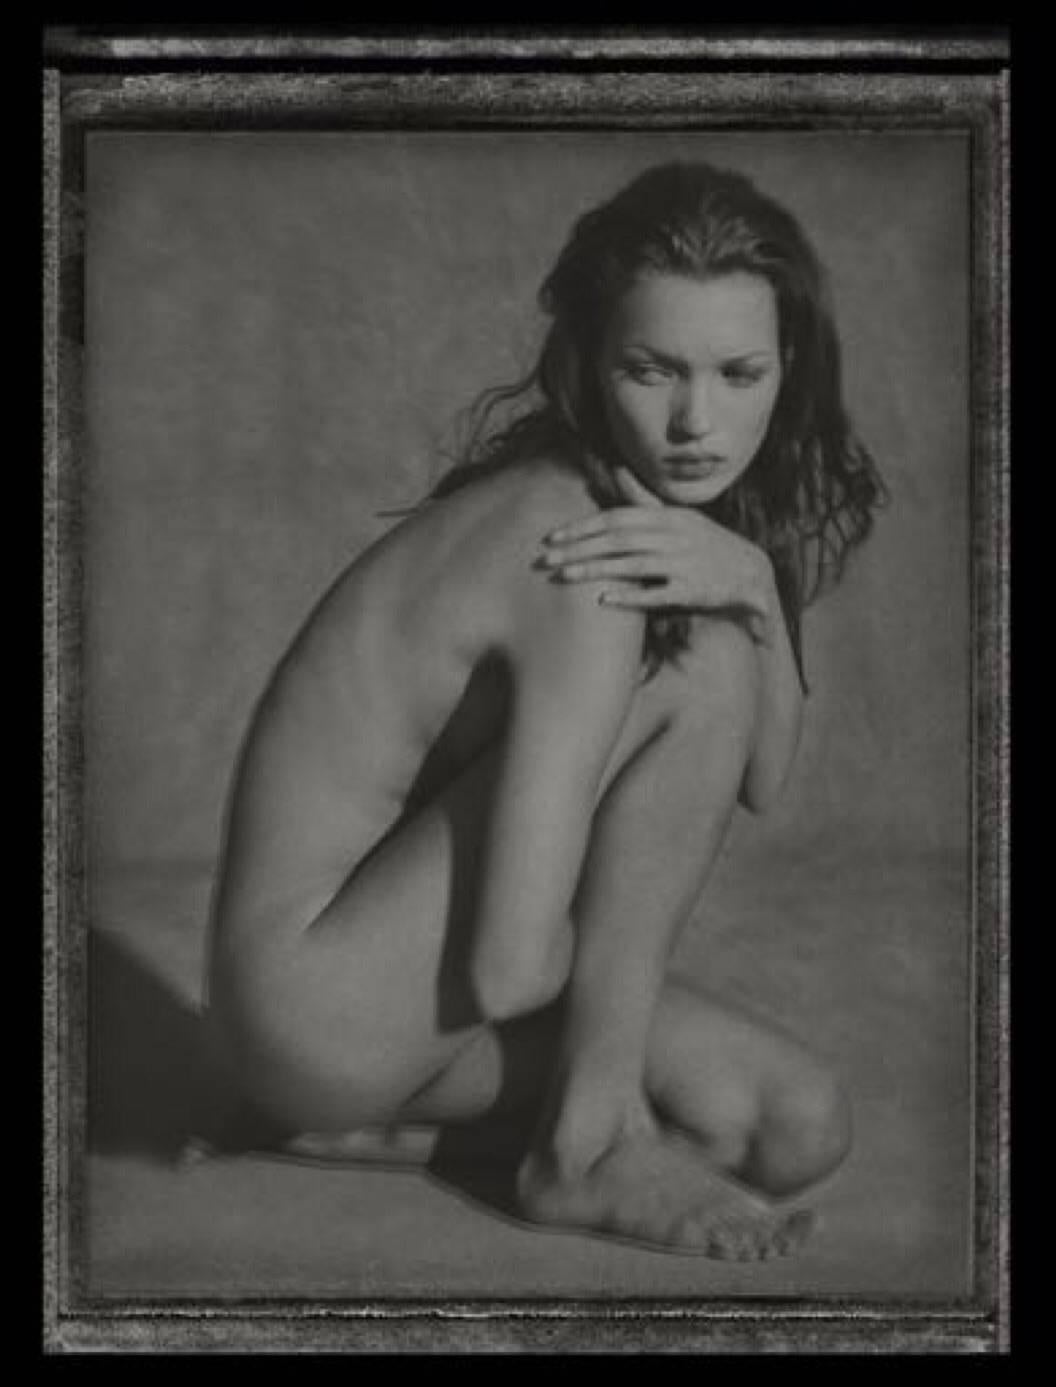 Albert Watson Portrait Photograph - Kate Moss from 'ROIDS!' Series